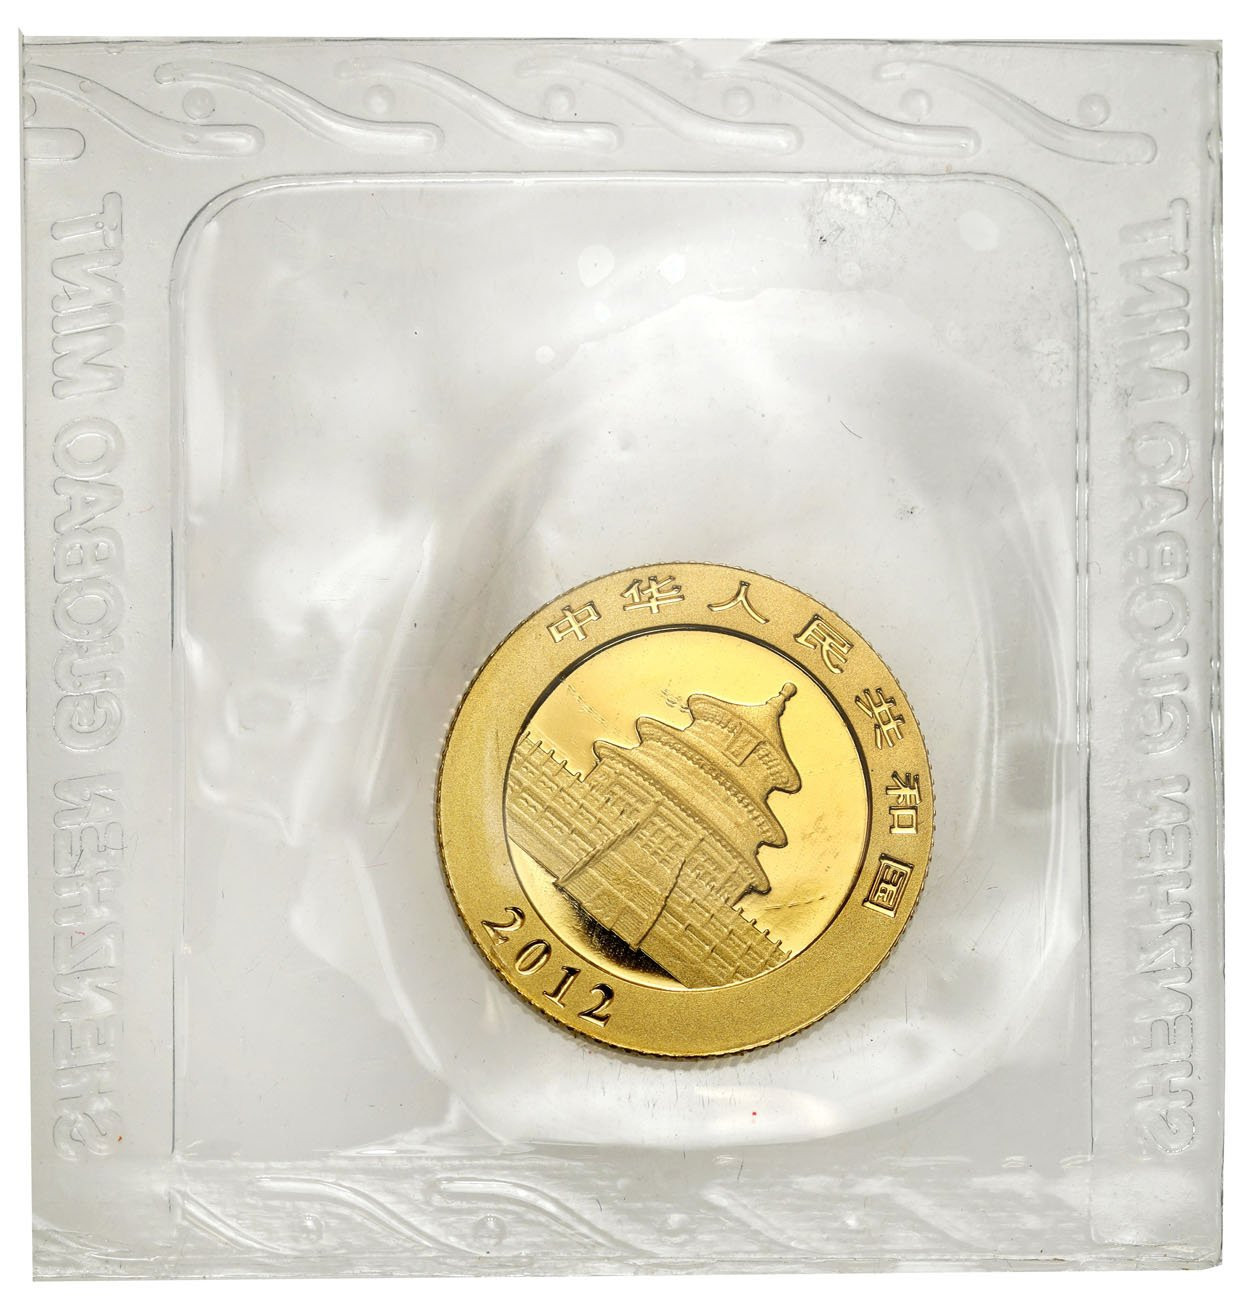 Chiny 50 yuan 2012 Panda - 1/10 uncji złota